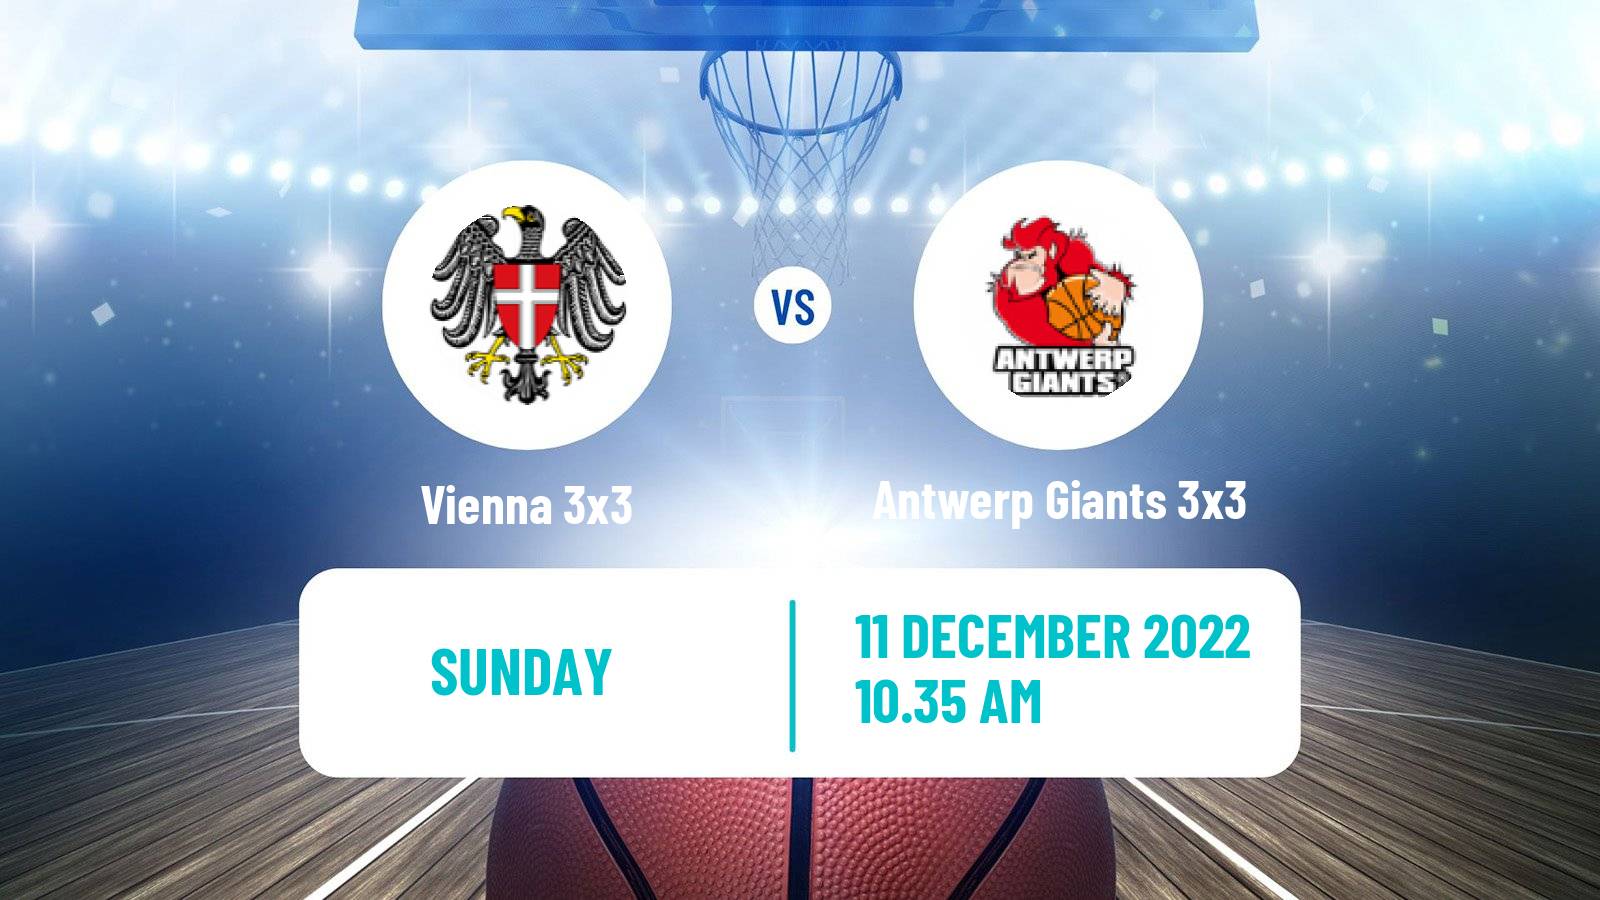 Basketball World Tour Final 3x3 Vienna 3x3 - Antwerp Giants 3x3